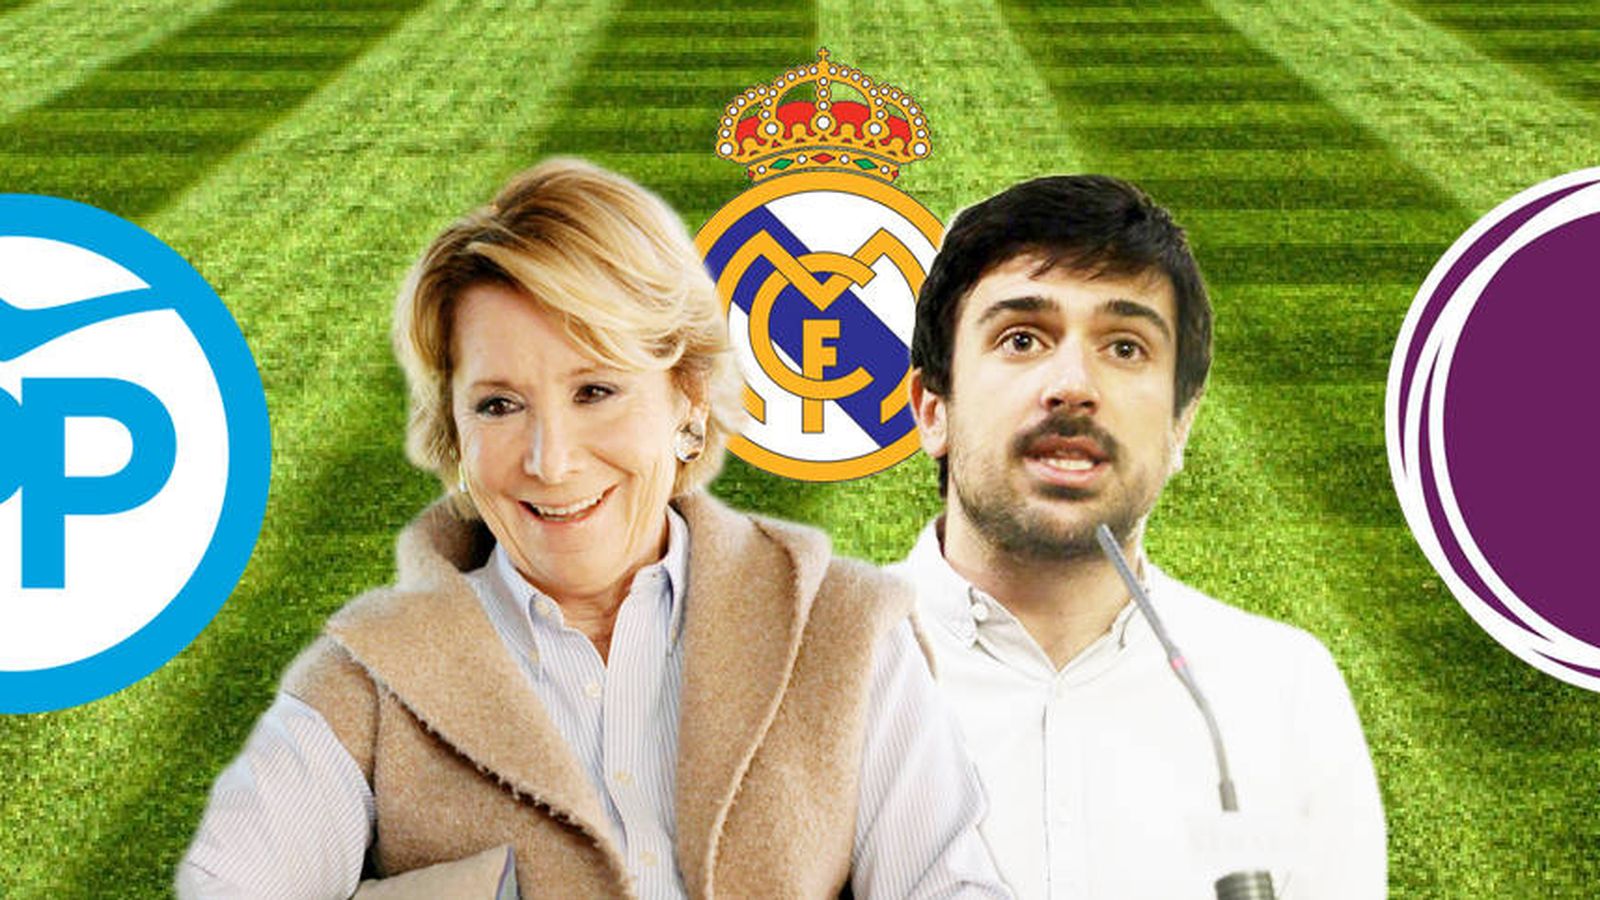 Foto: El Real Madrid une lo que la política separa. Aguirre y Espinar comparten corazón blanco. (EC)